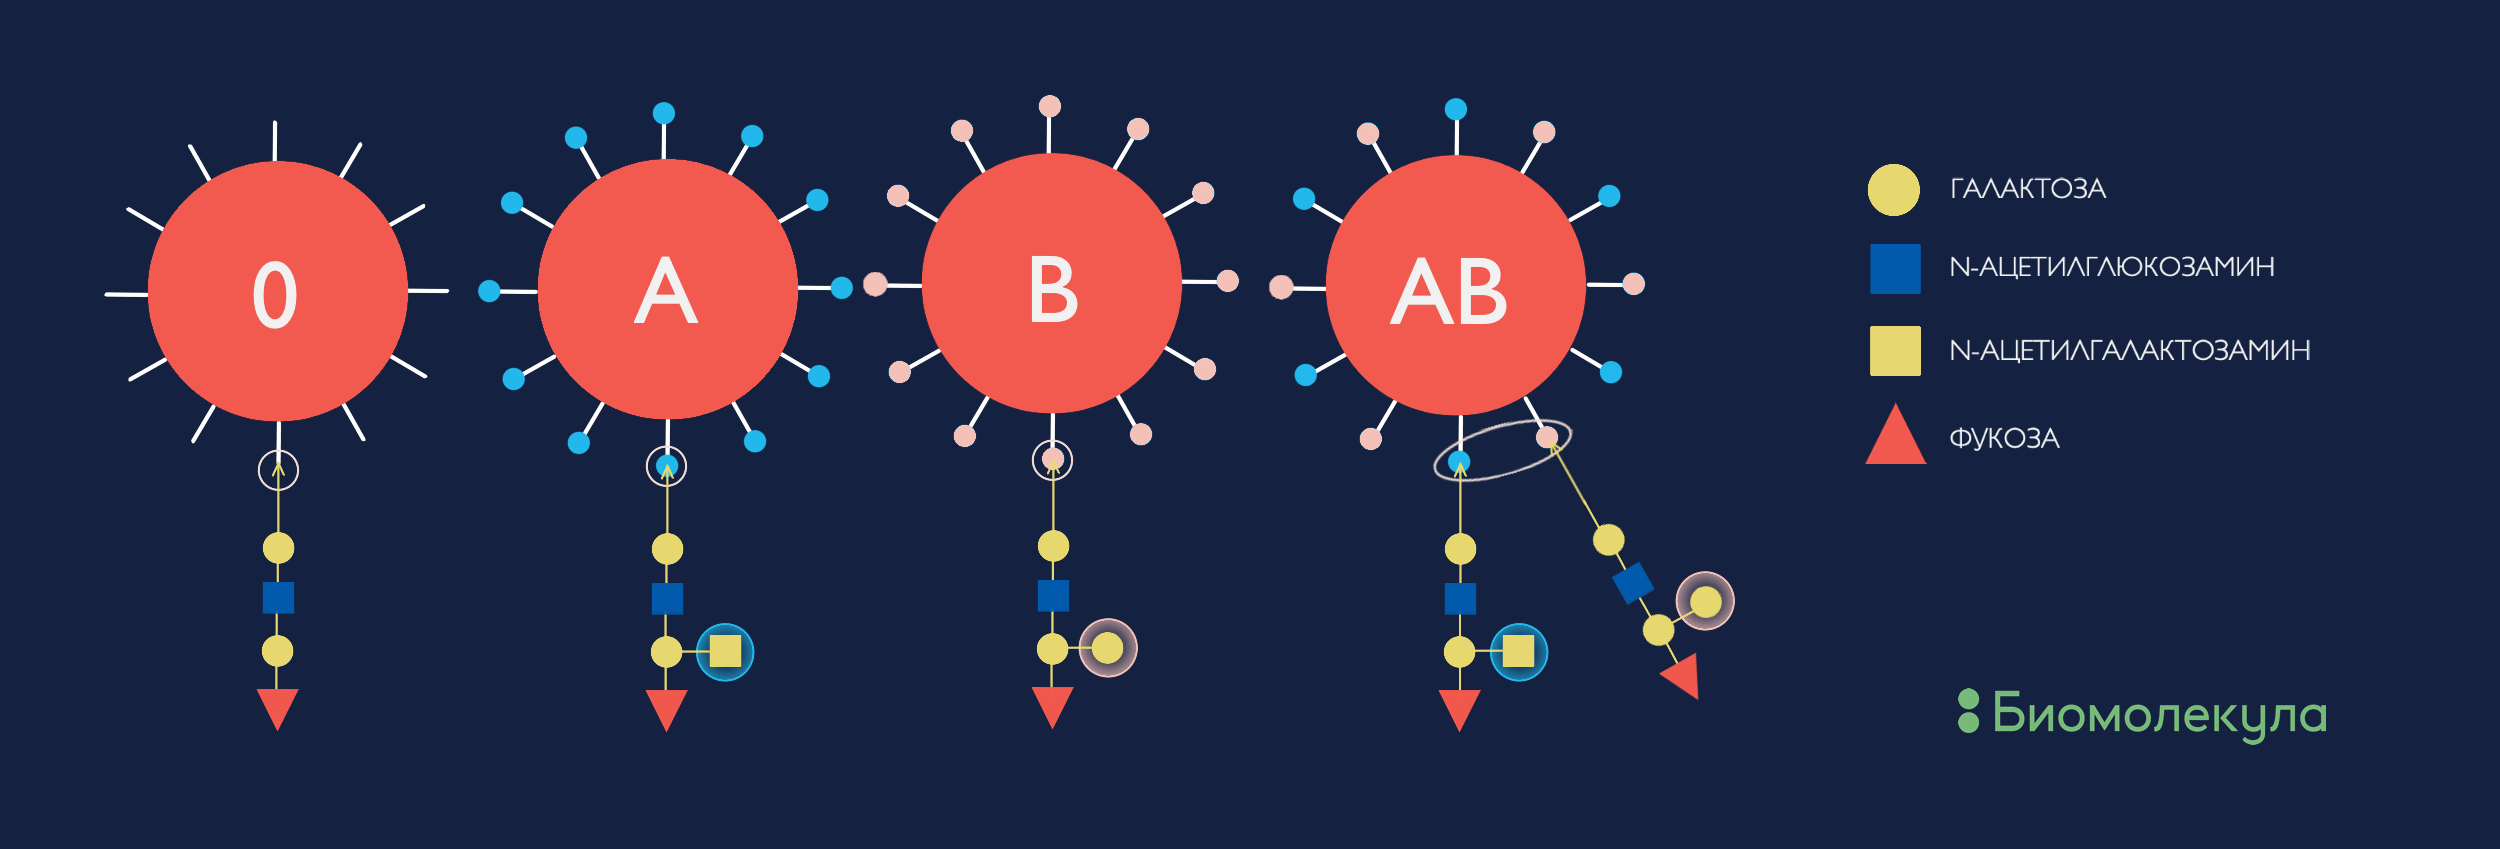 Углеводные детерминанты системы групп крови AB0